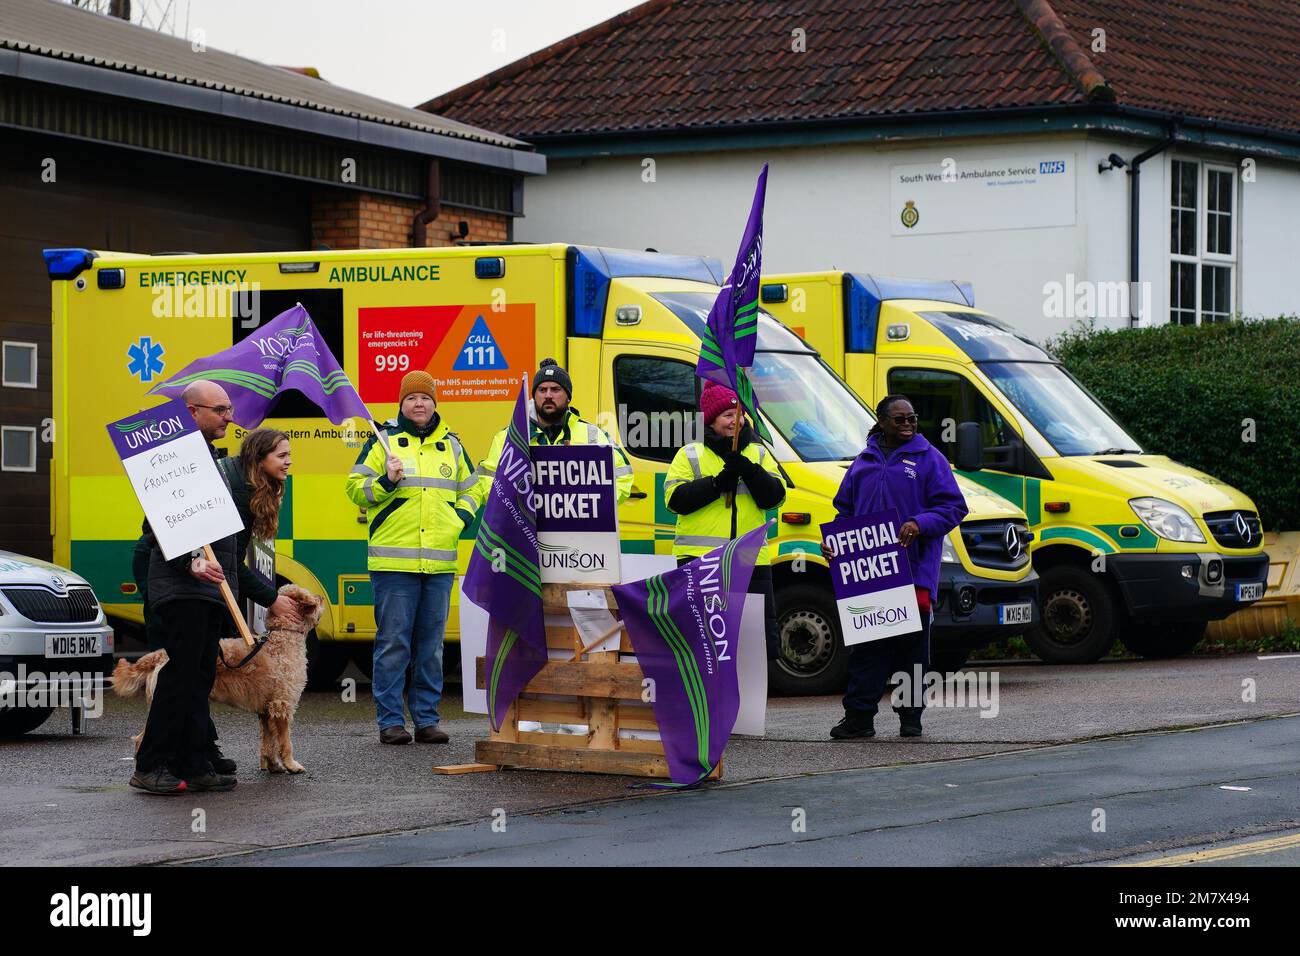 Los trabajadores de ambulancias en la línea de piquetes fuera de la estación de ambulancias Soundwell en Bristol, como miembros de los sindicatos Unison y GMB, toman medidas de huelga sobre el pago y las condiciones que afectarán las llamadas que no amenazan la vida. Fecha de la fotografía: Miércoles 11 de enero de 2023. Foto de stock